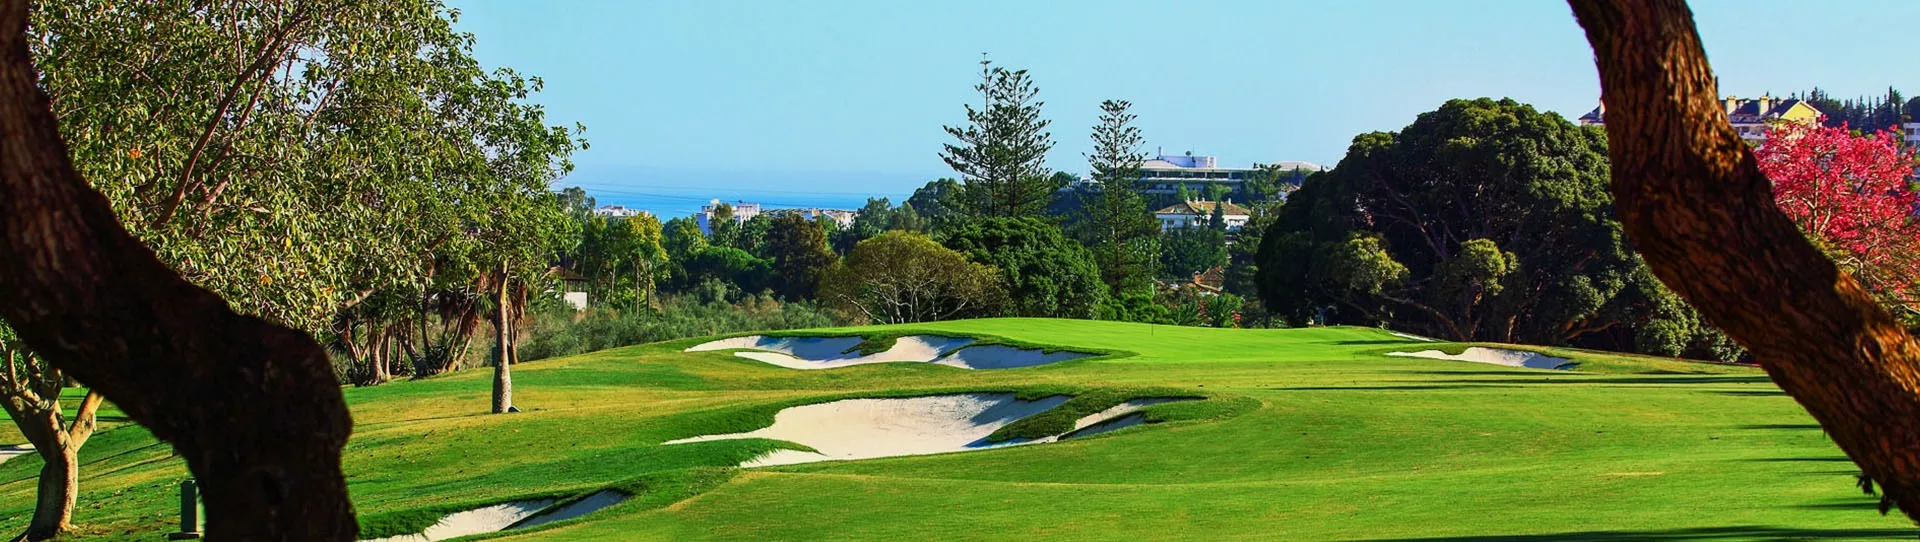 Spain golf courses - Real Club de Golf Las Brisas - Photo 2